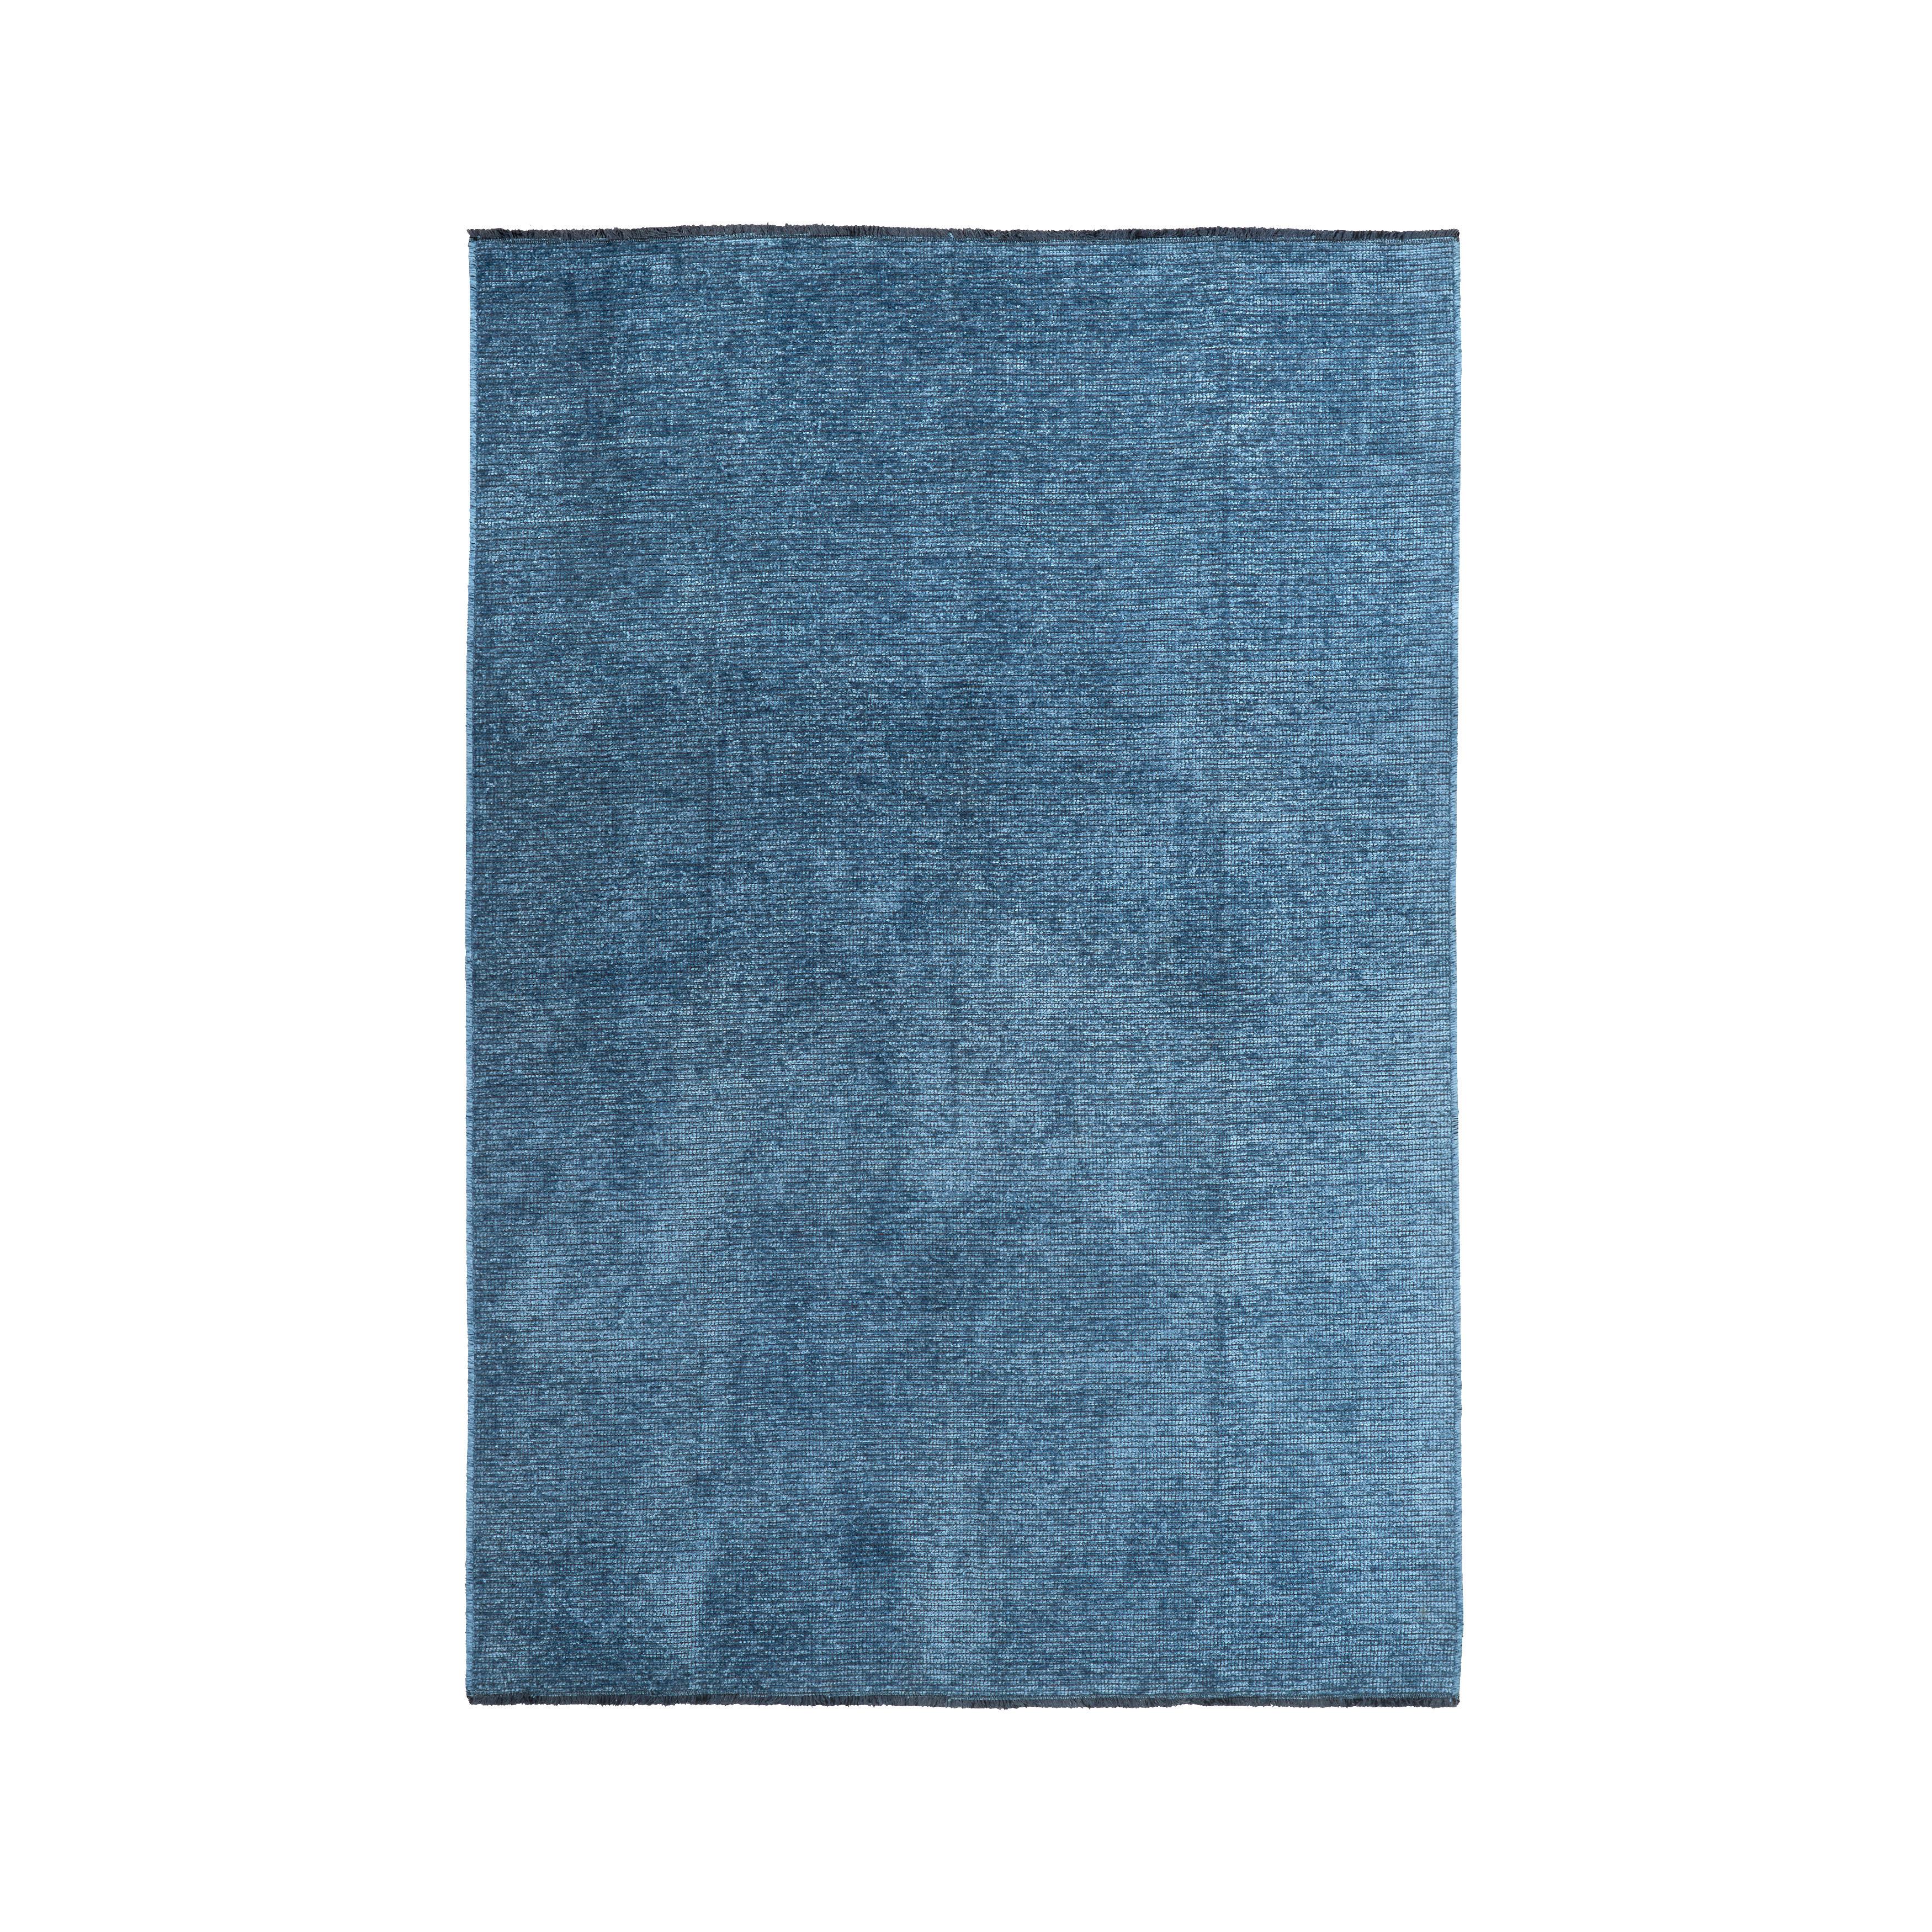 Szőtt Szőnyeg Silke 120/170 - Kék, romantikus/Landhaus, Textil (120/170cm) - Modern Living